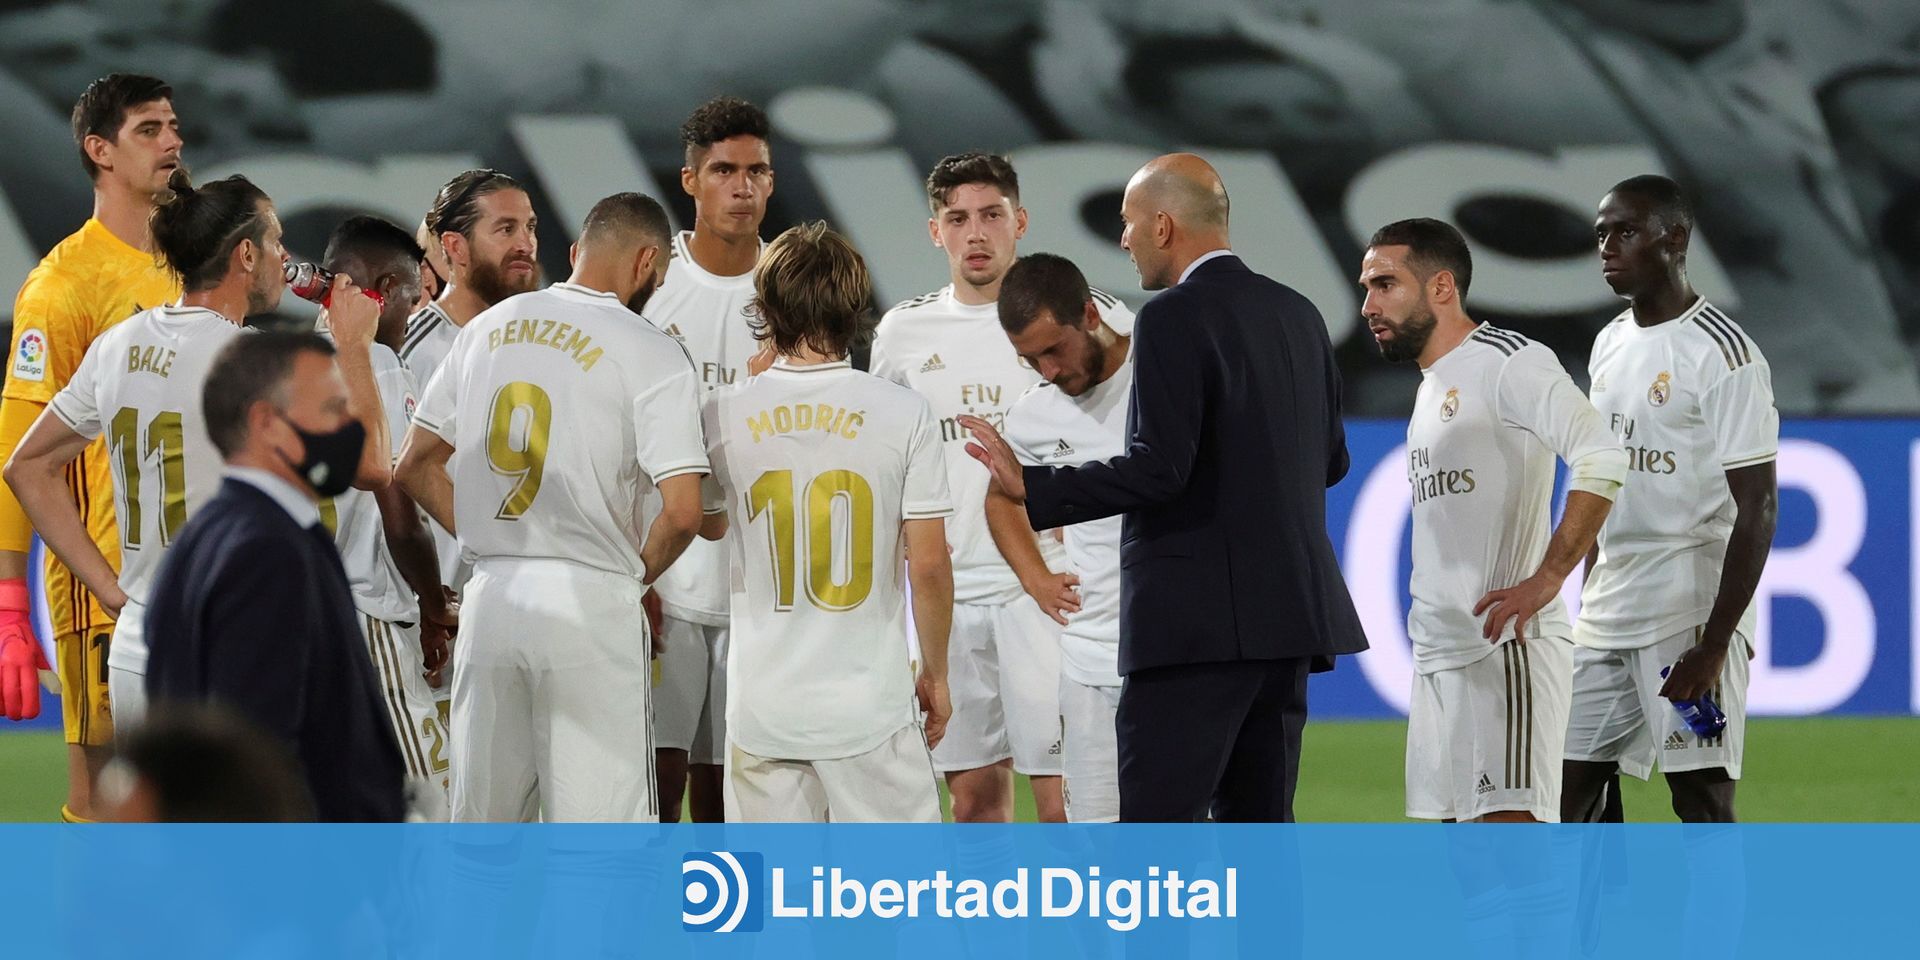 El Real Madrid como medida culé de todas las cosas - El penúltimo raulista  vivo - Libertad Digital